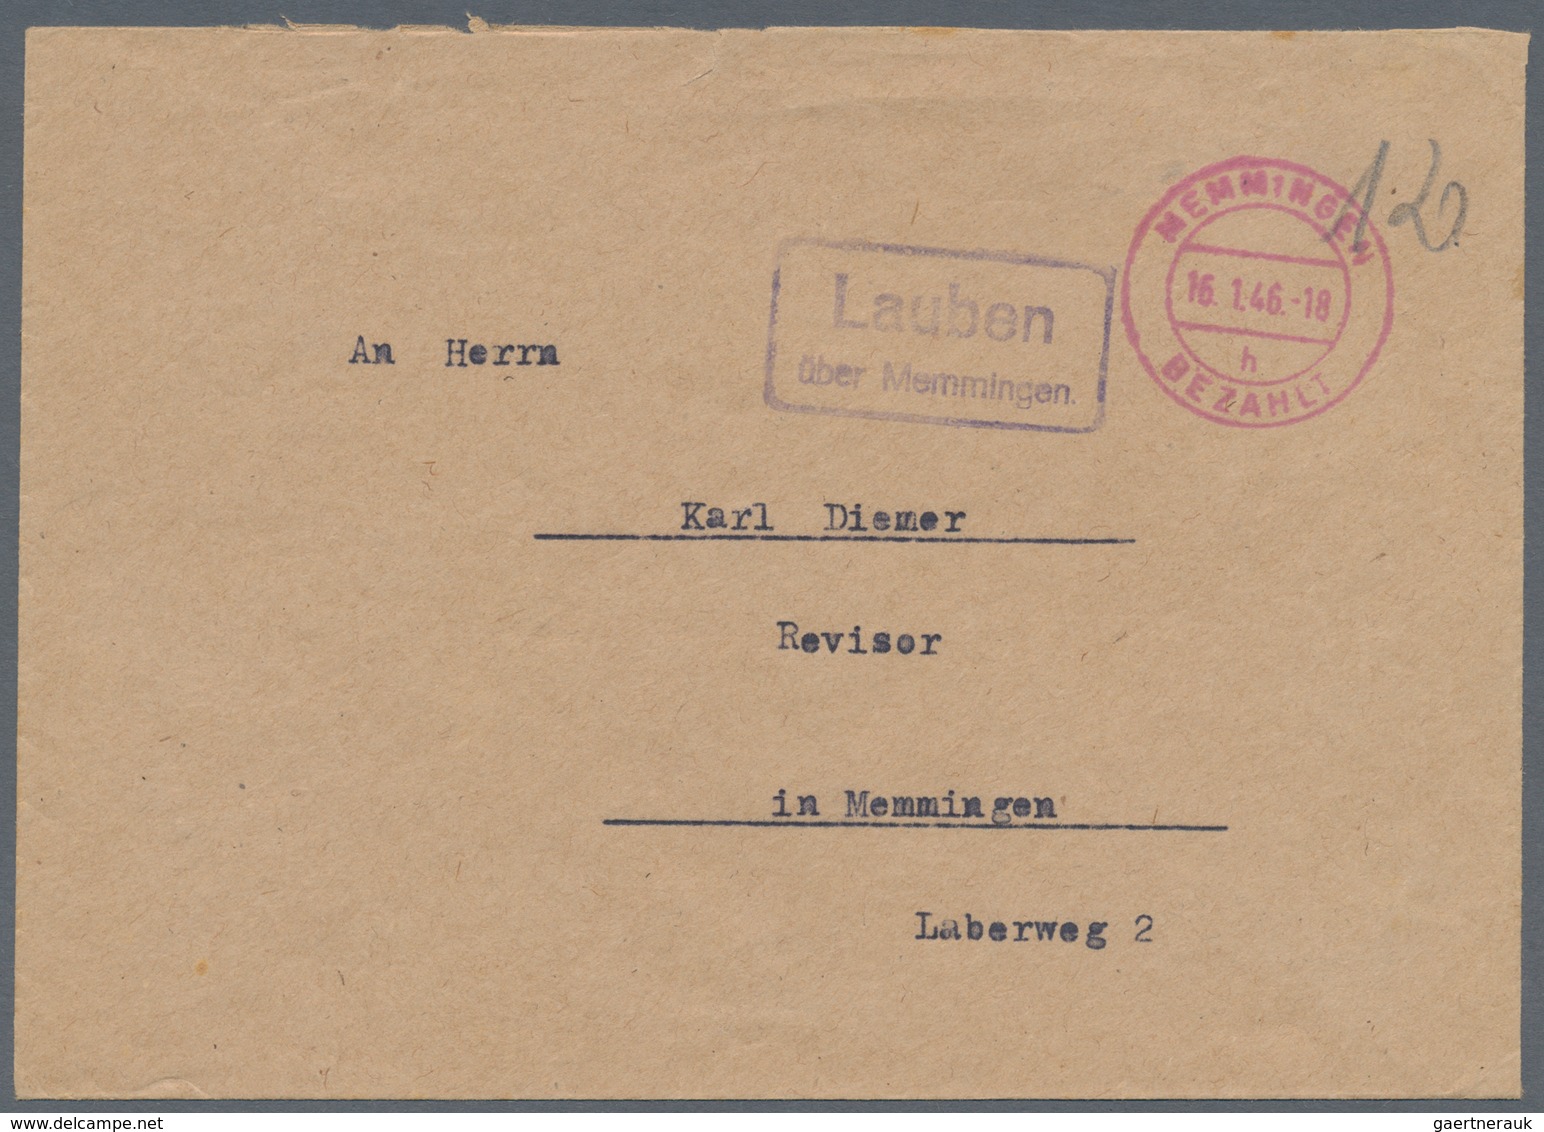 Deutschland: 1899/1978, LANDPOSTSTEMPEL, vielseitiger Sammlungsbestand von ca. 560 Belege mit klaren